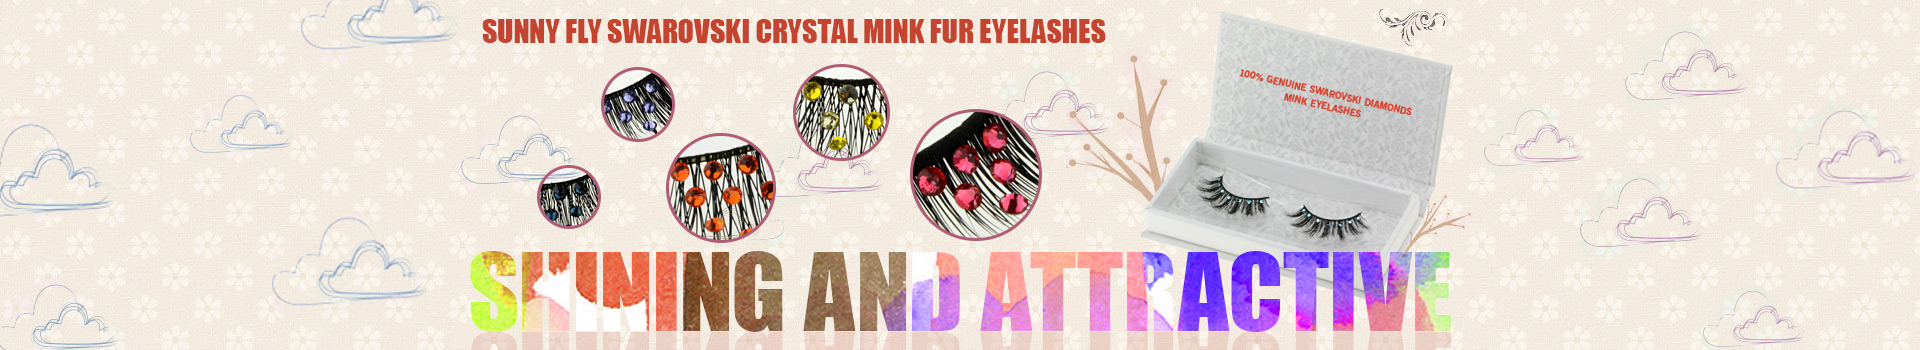 Swarovski Crystal Mink Fur Eyelashes MS23